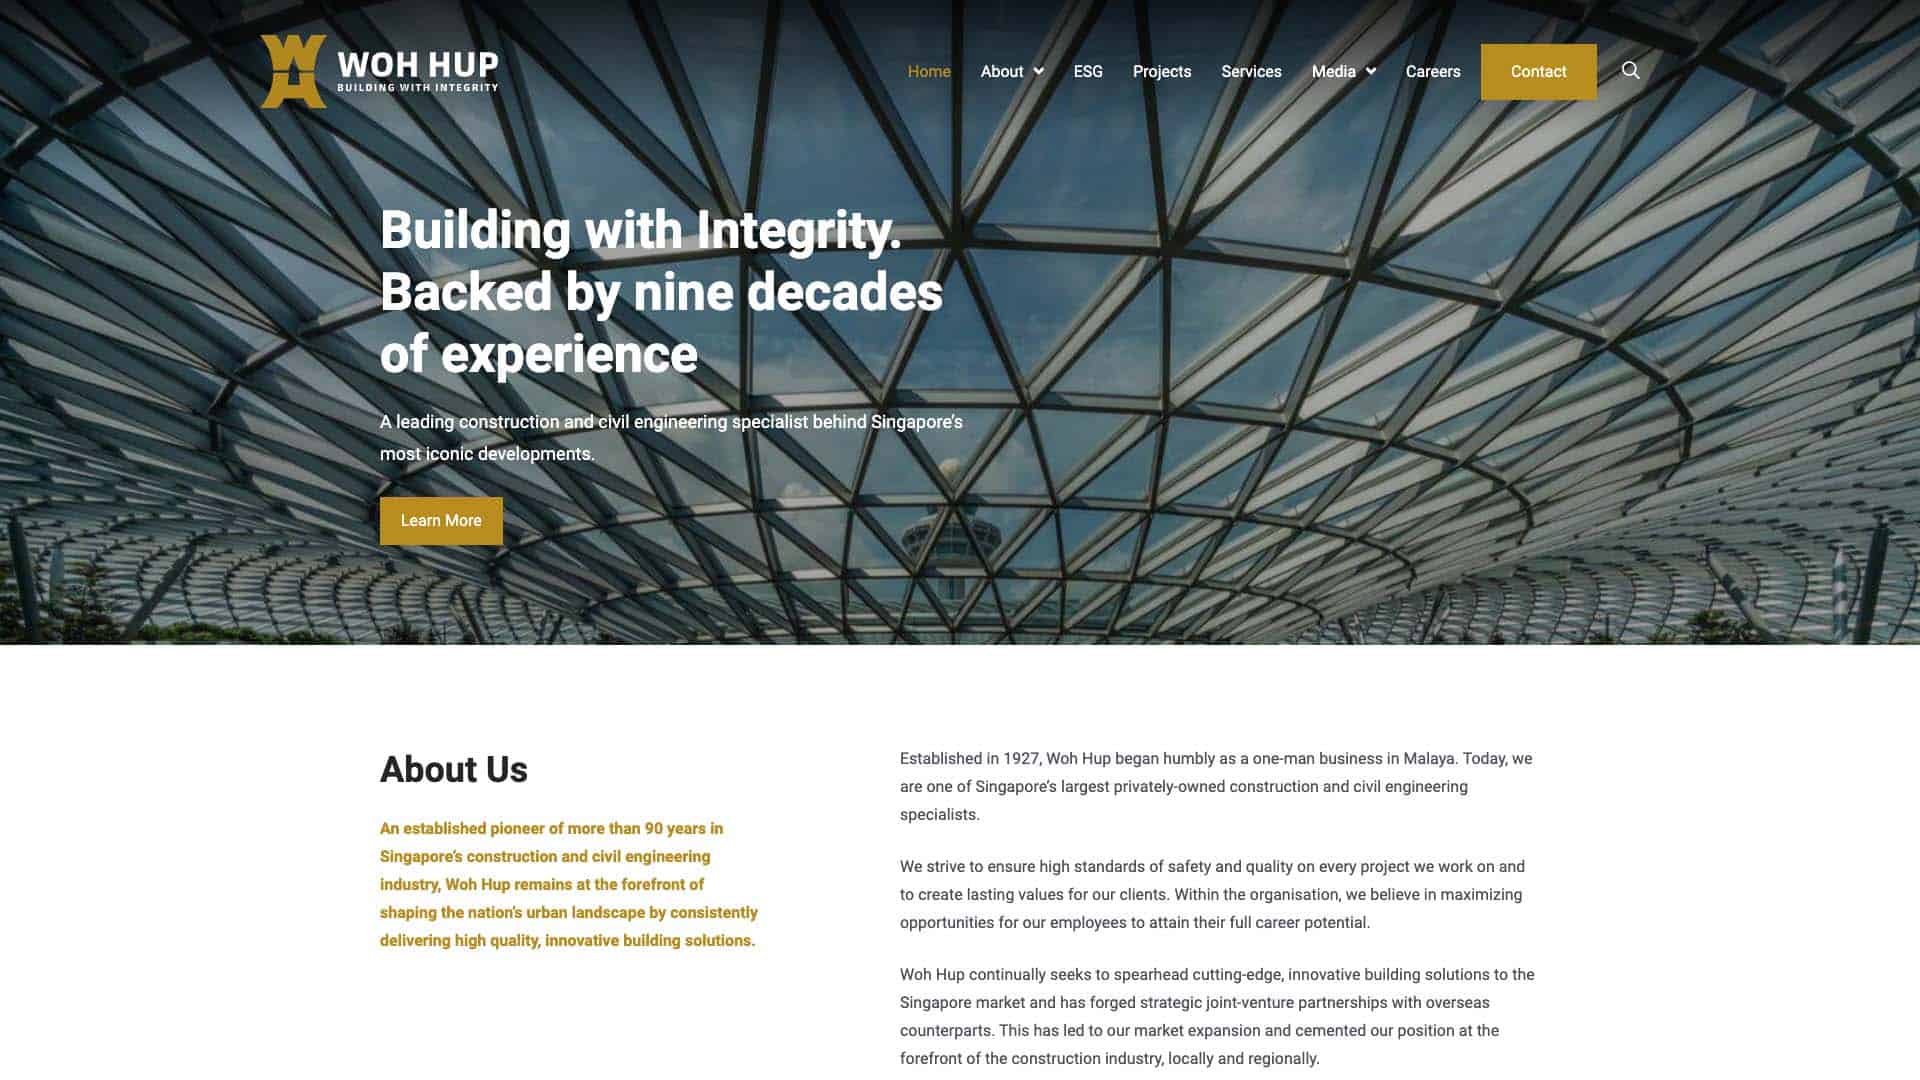 Portfolio website design for Woh Hup after redesign